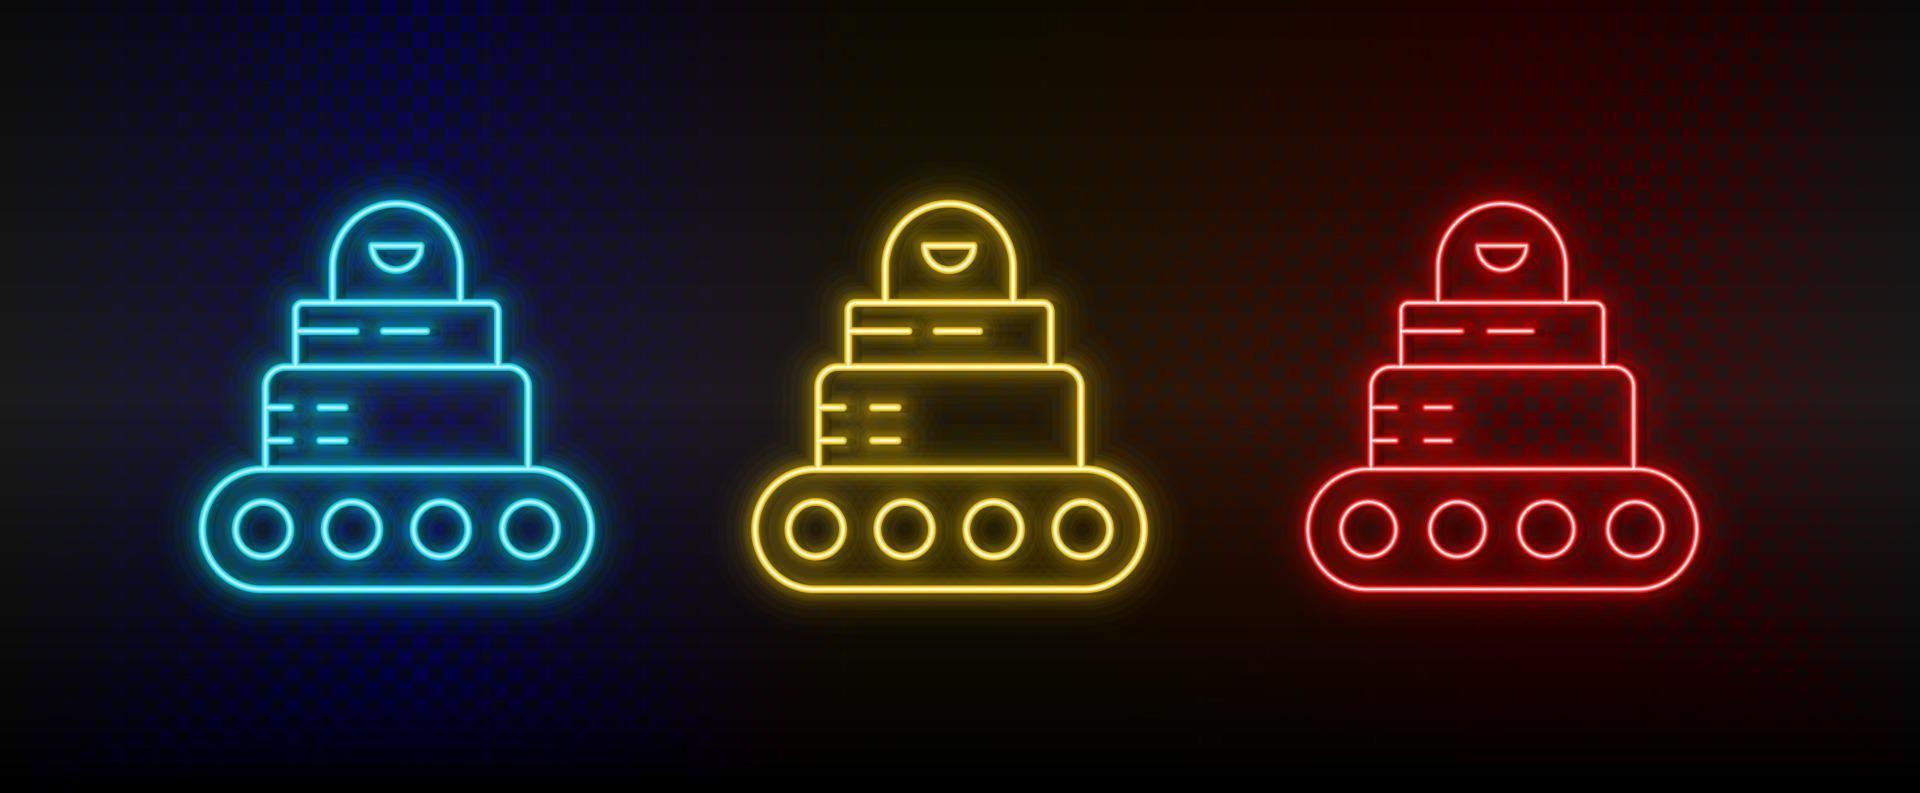 icônes au néon. voiture-robot. ensemble d'icônes vectorielles néon rouge, bleu, jaune sur fond sombre vecteur